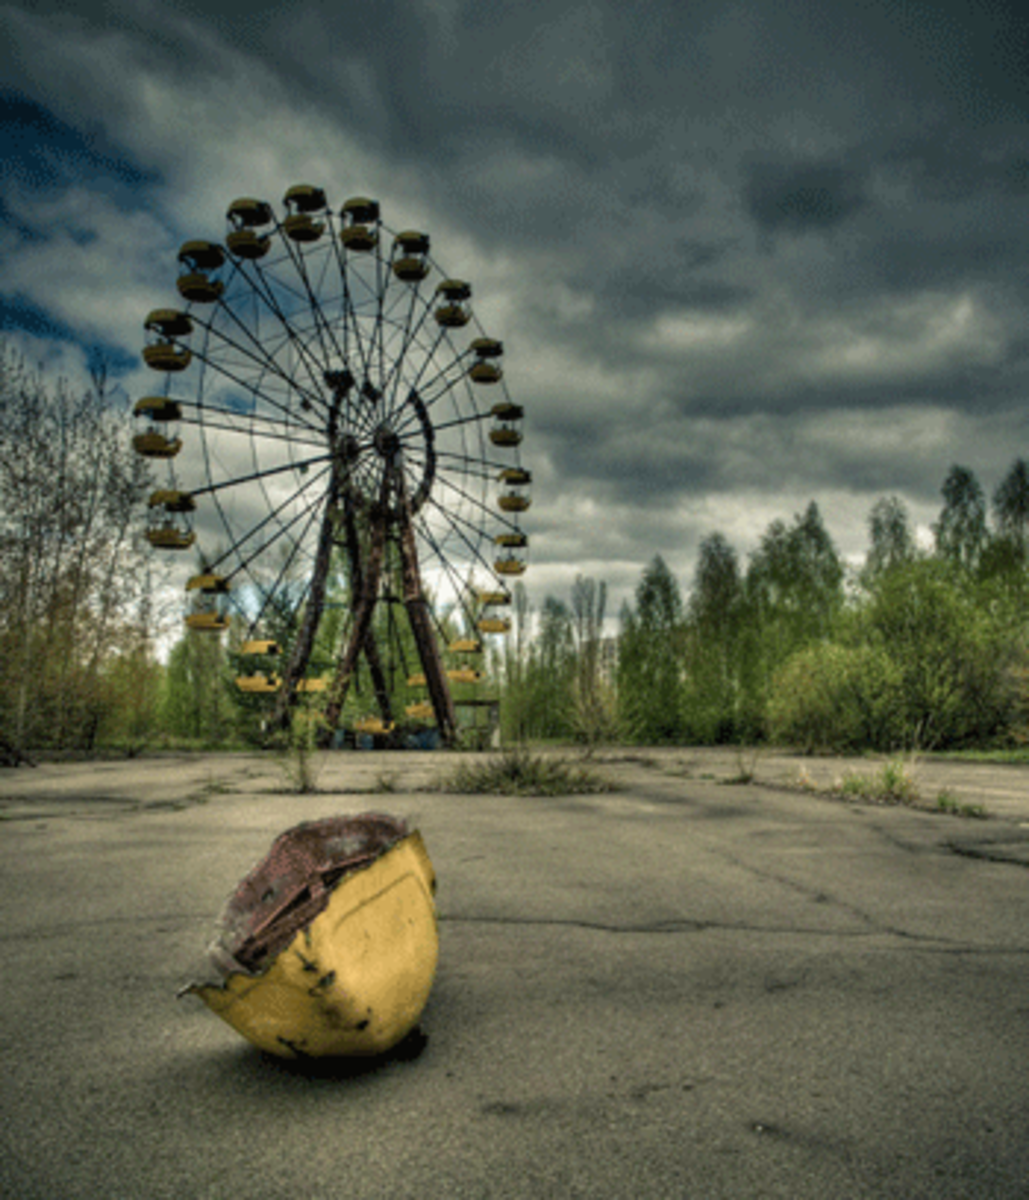 Chernobyl today